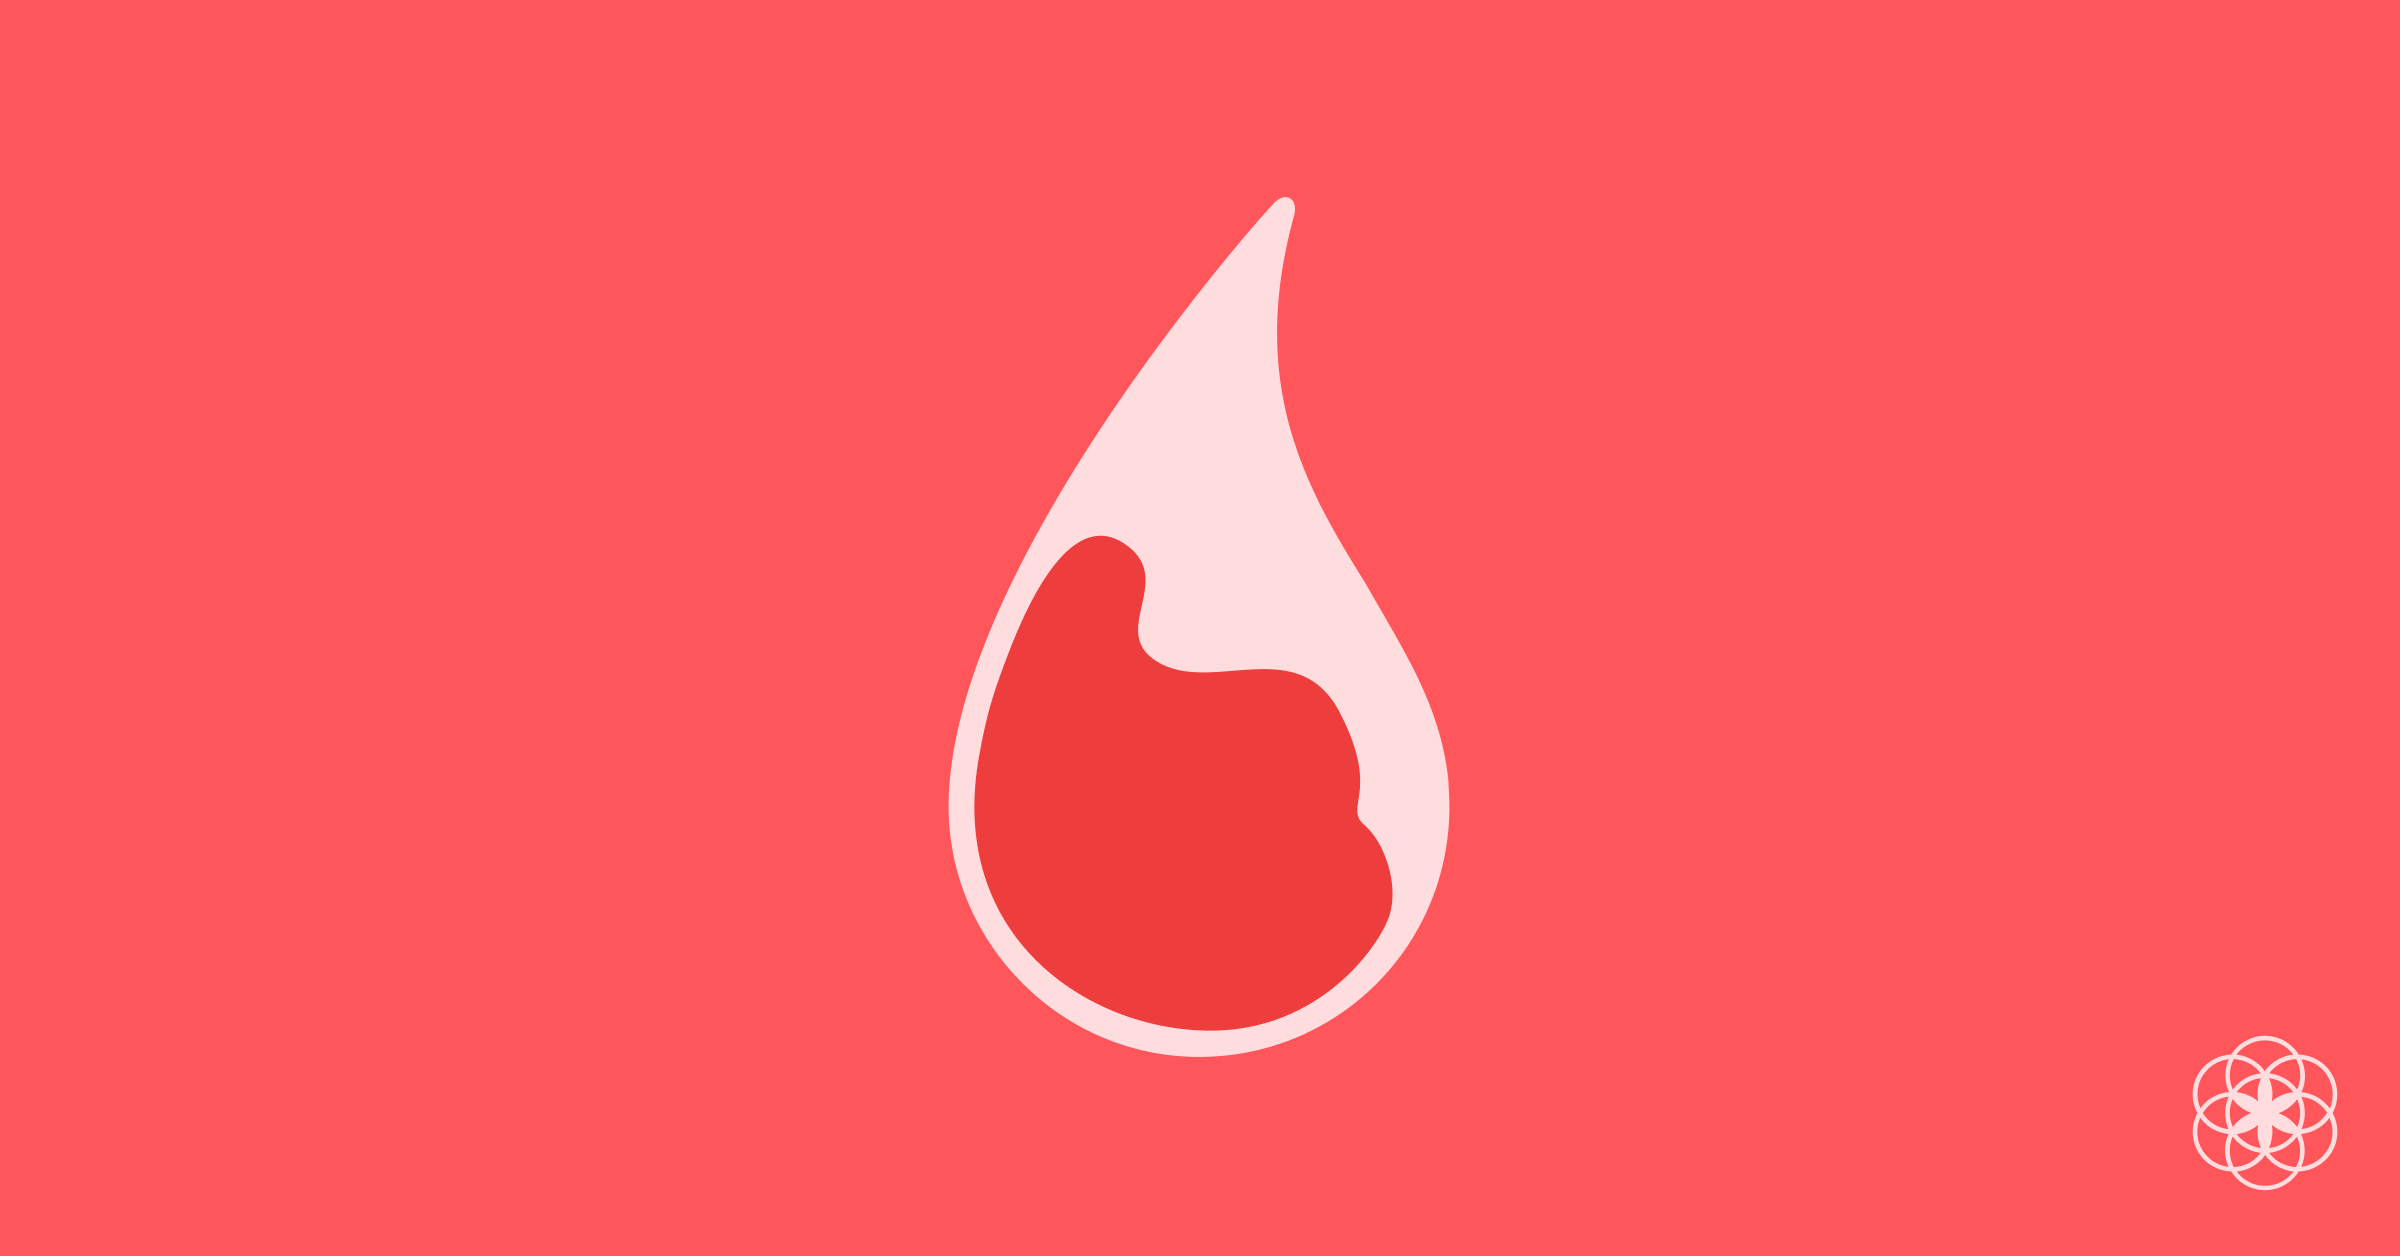 É normal expelir coágulos de sangue durante a menstruação? - Dra